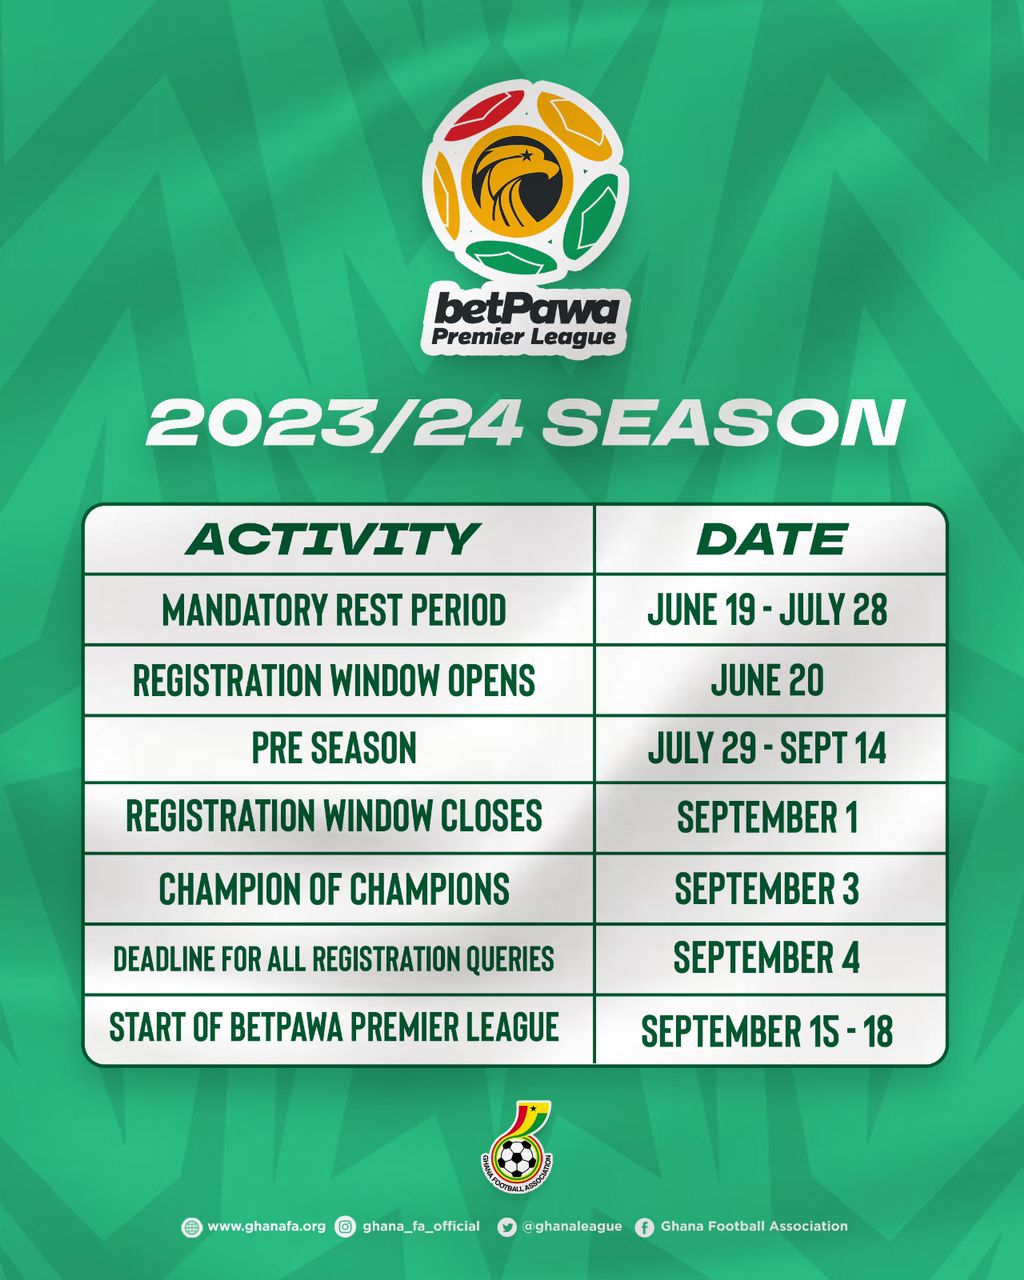 Calendar for 2023/24 Ghana Premier League season